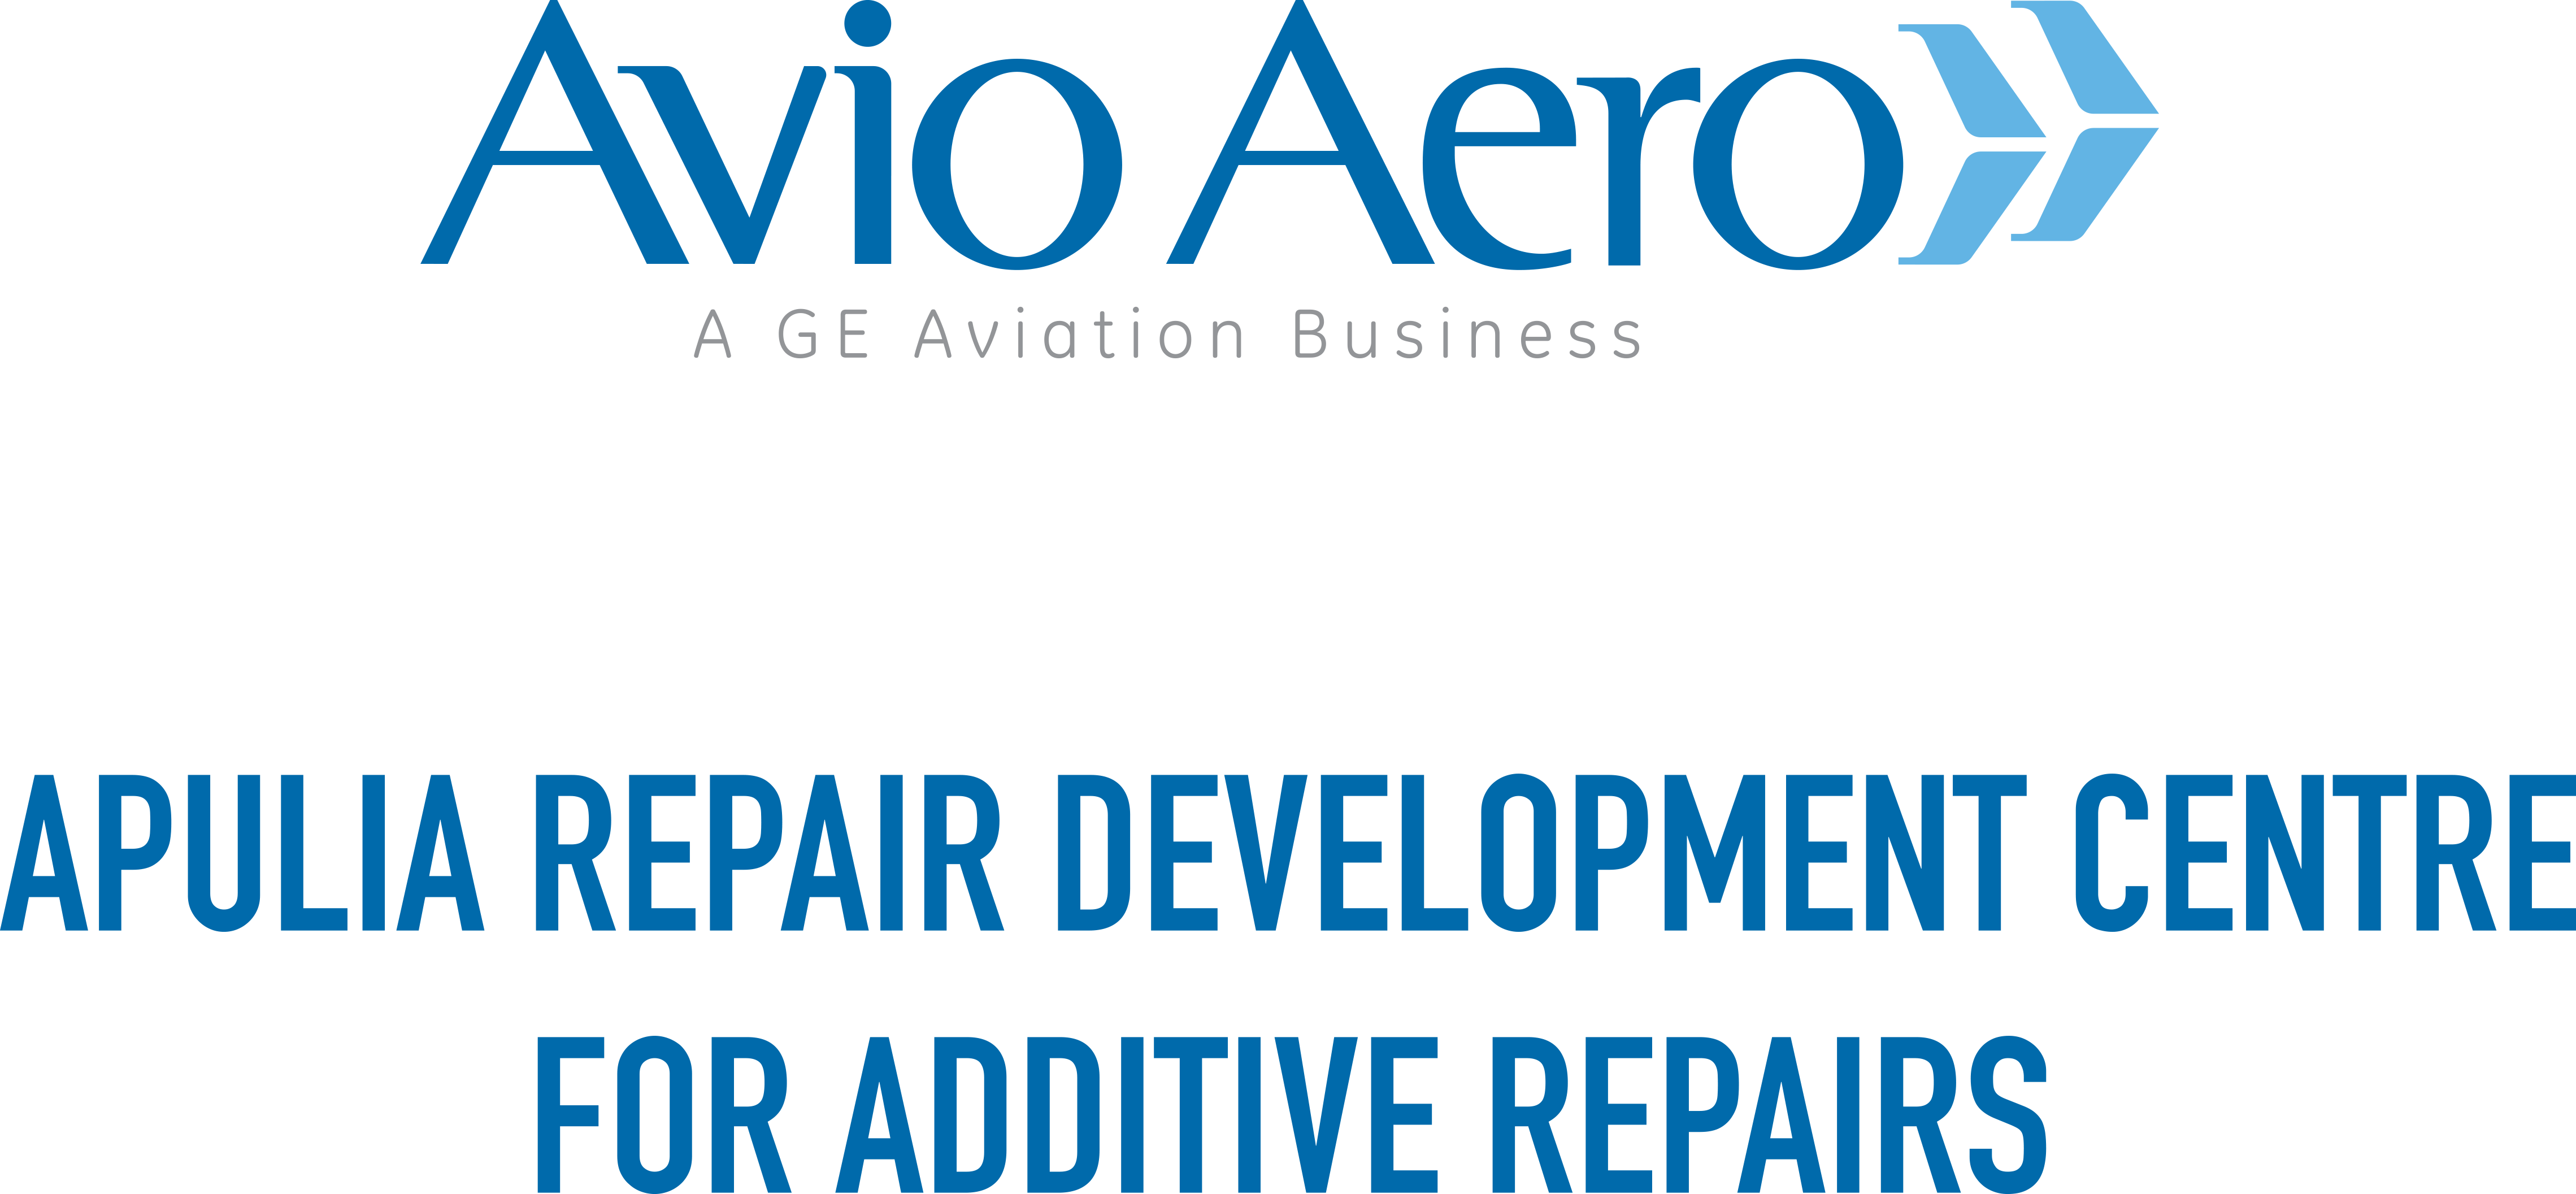 Apulia Repair Development Center for Additive Repairs